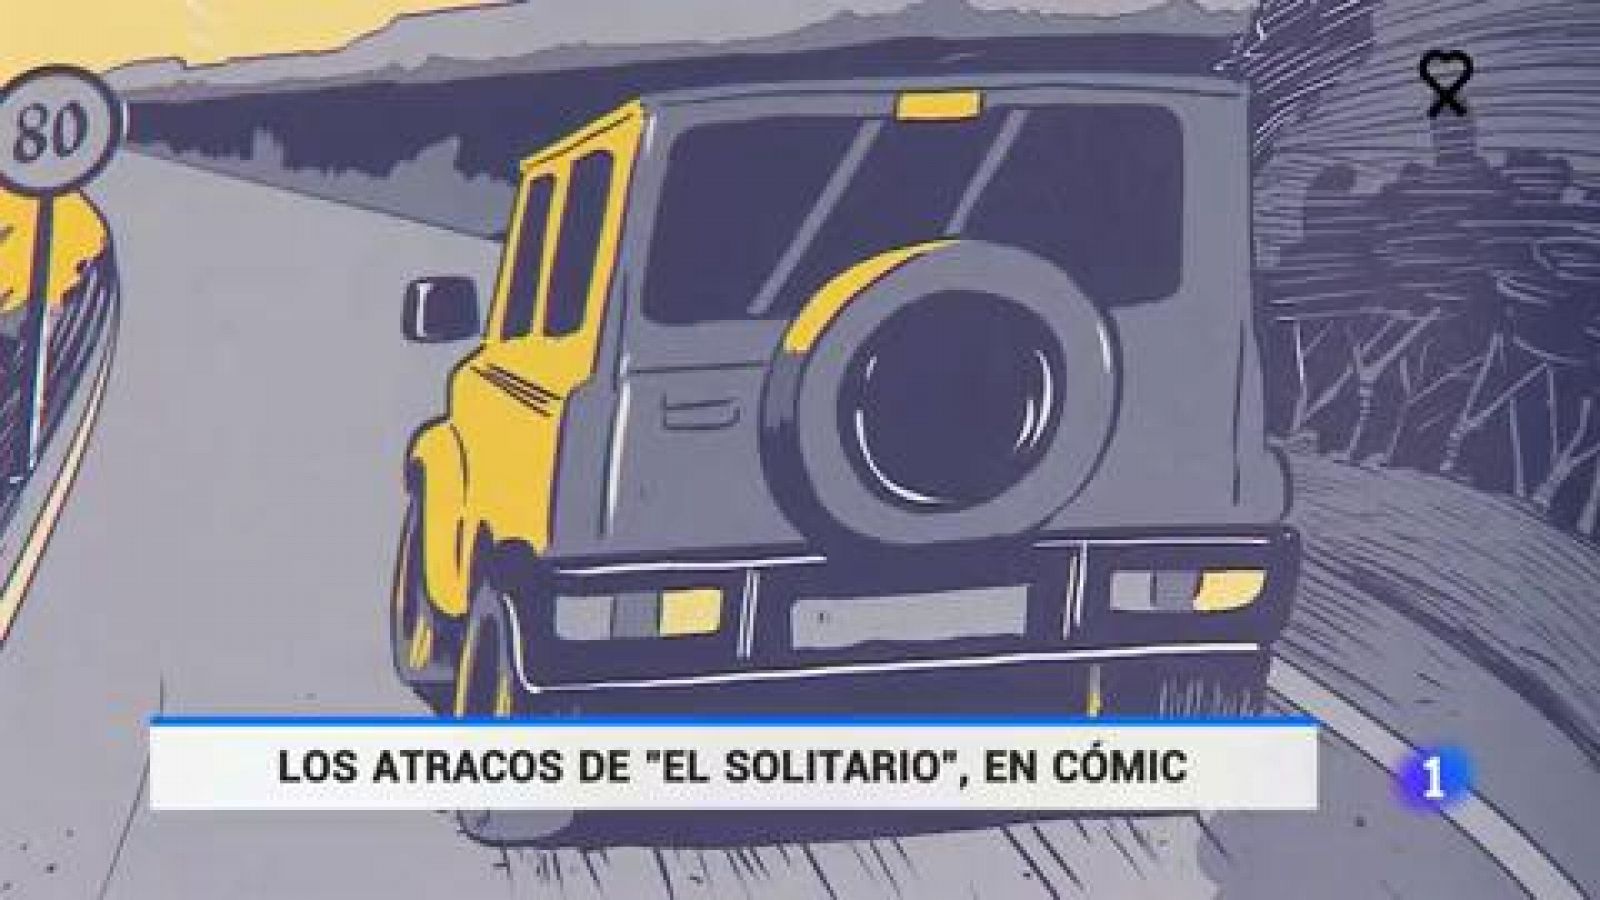 Los atracos de Jaime Giménez Arbe "El solitario", en cómic